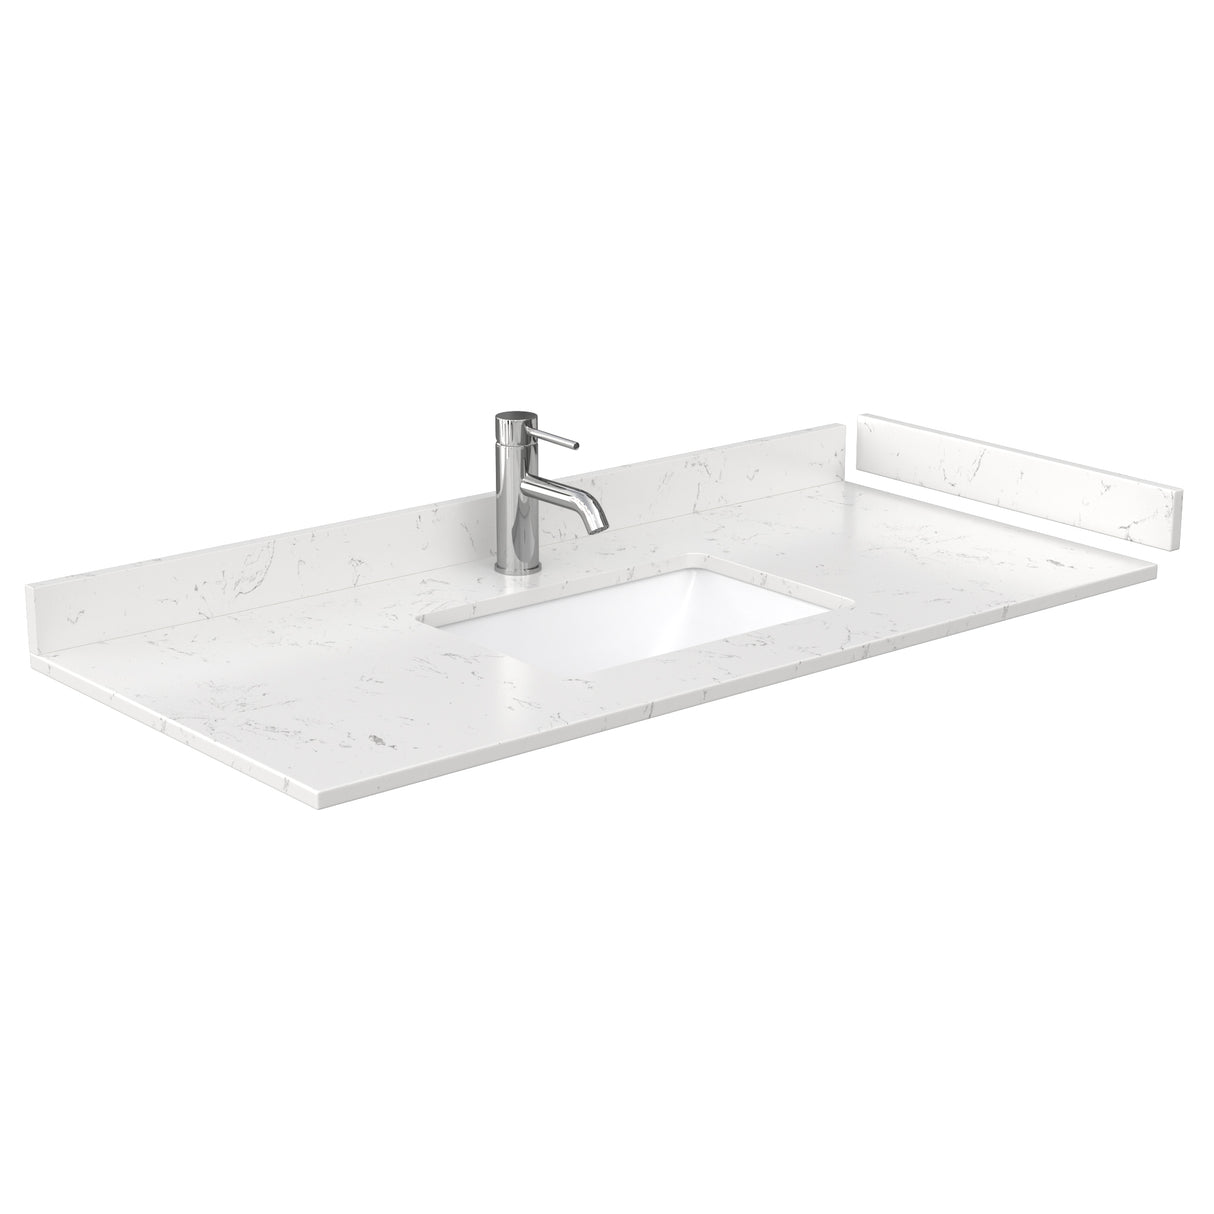 Sheffield 48 Inch Single Bathroom Vanity in Espresso Carrara Cultured Marble Countertop Undermount Square Sink No Mirror